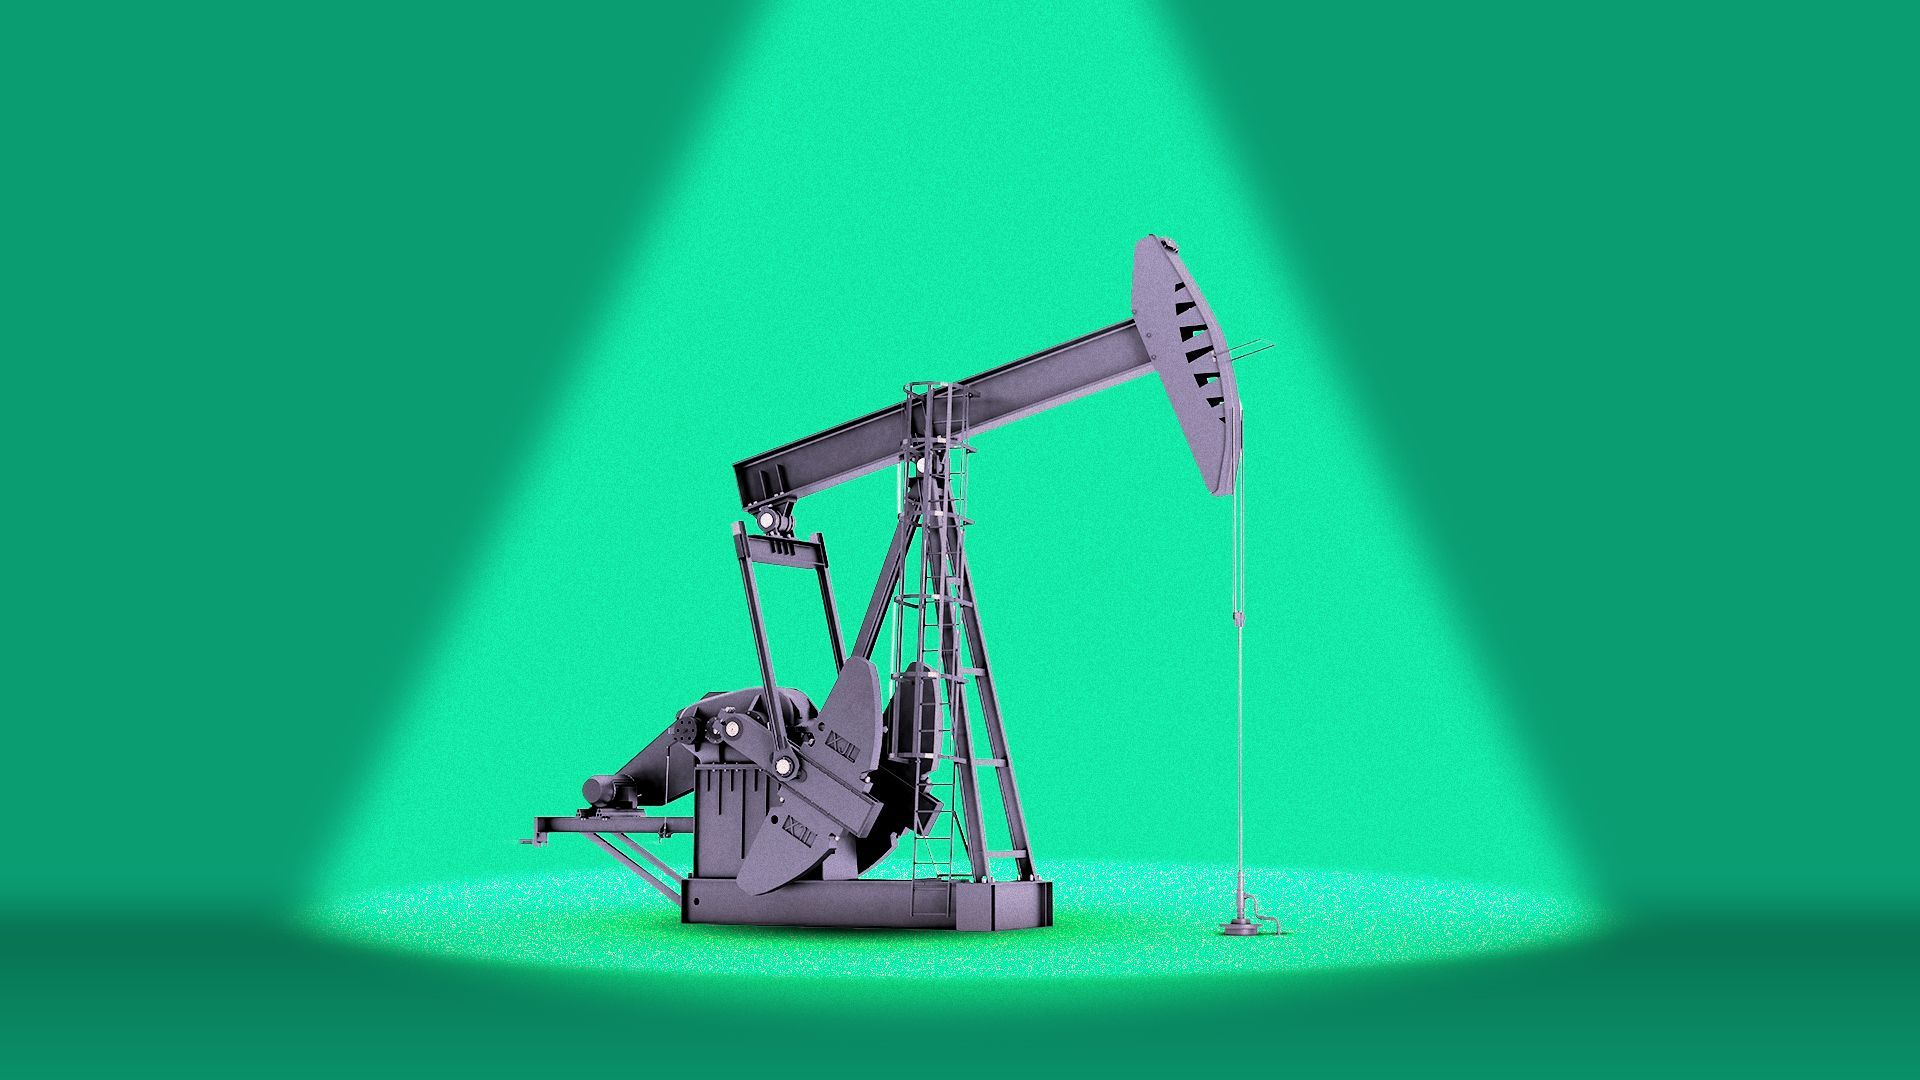 Illustration of an oil rig under a spotlight